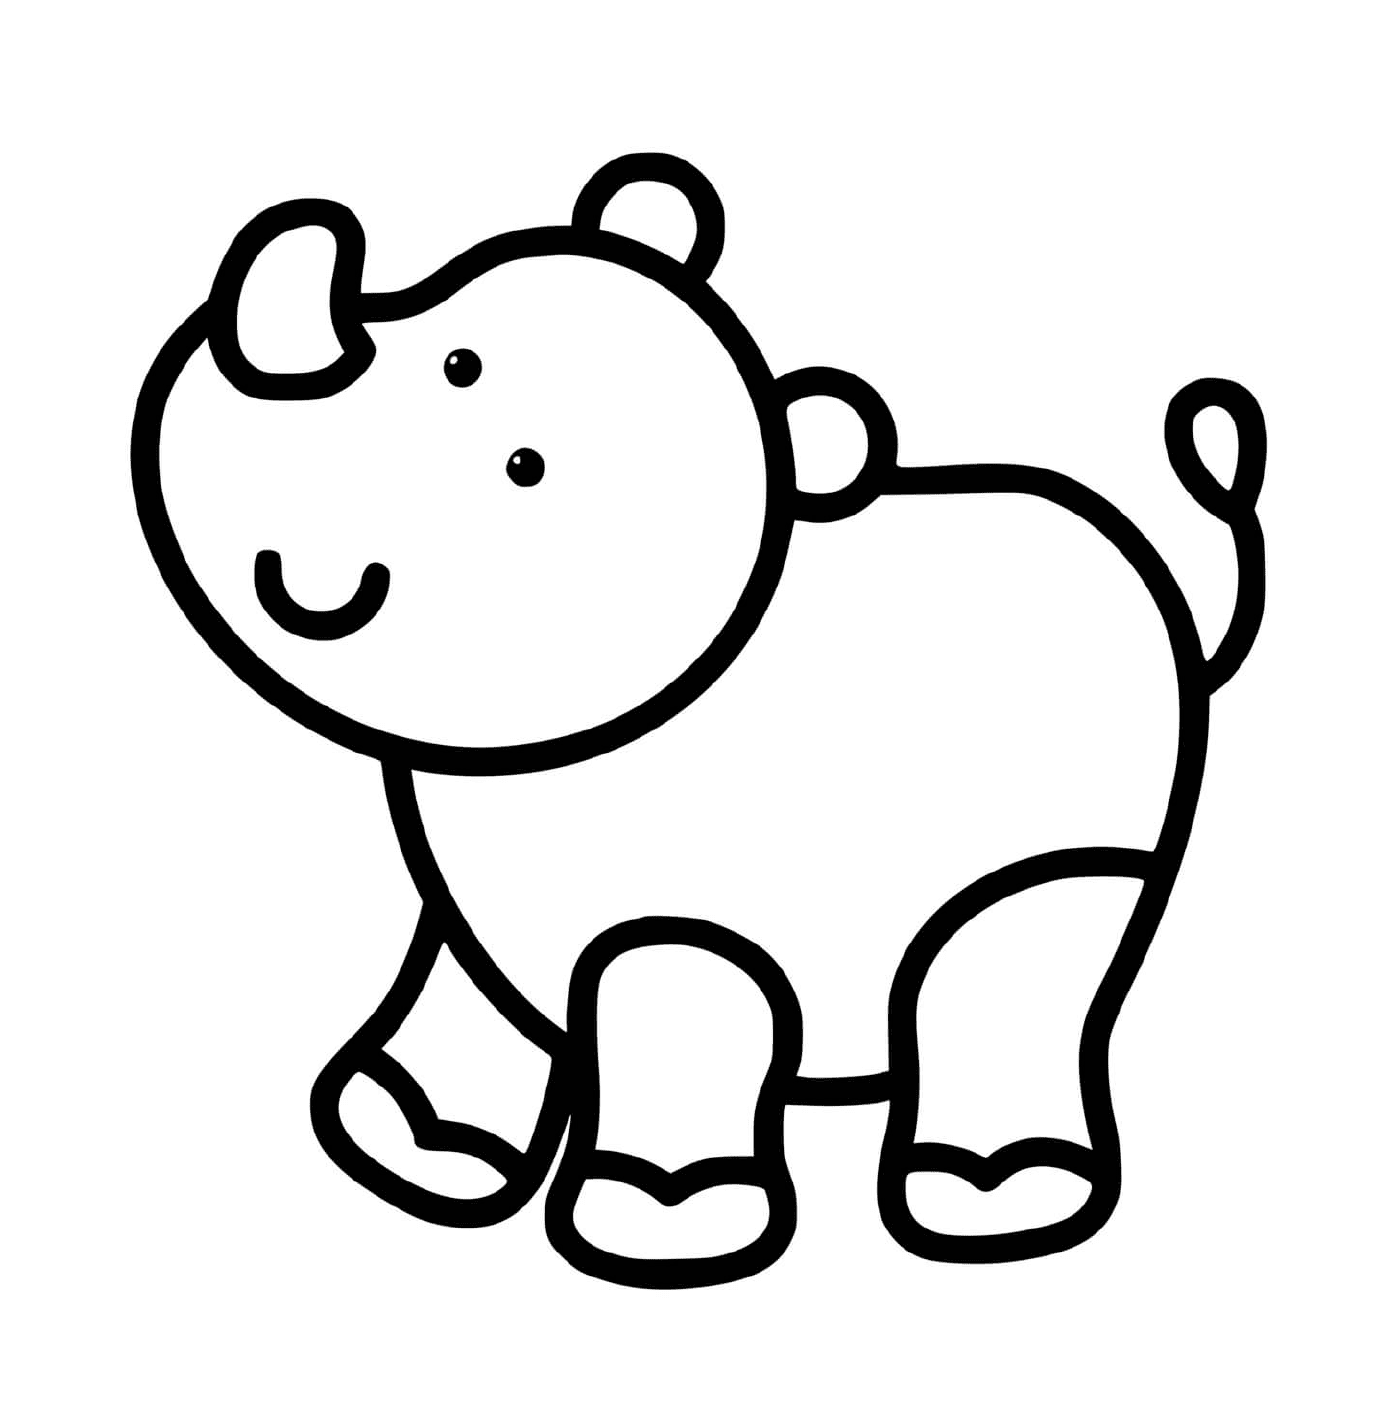  Un rinoceronte facile da disegnare per bambini di 2 anni 